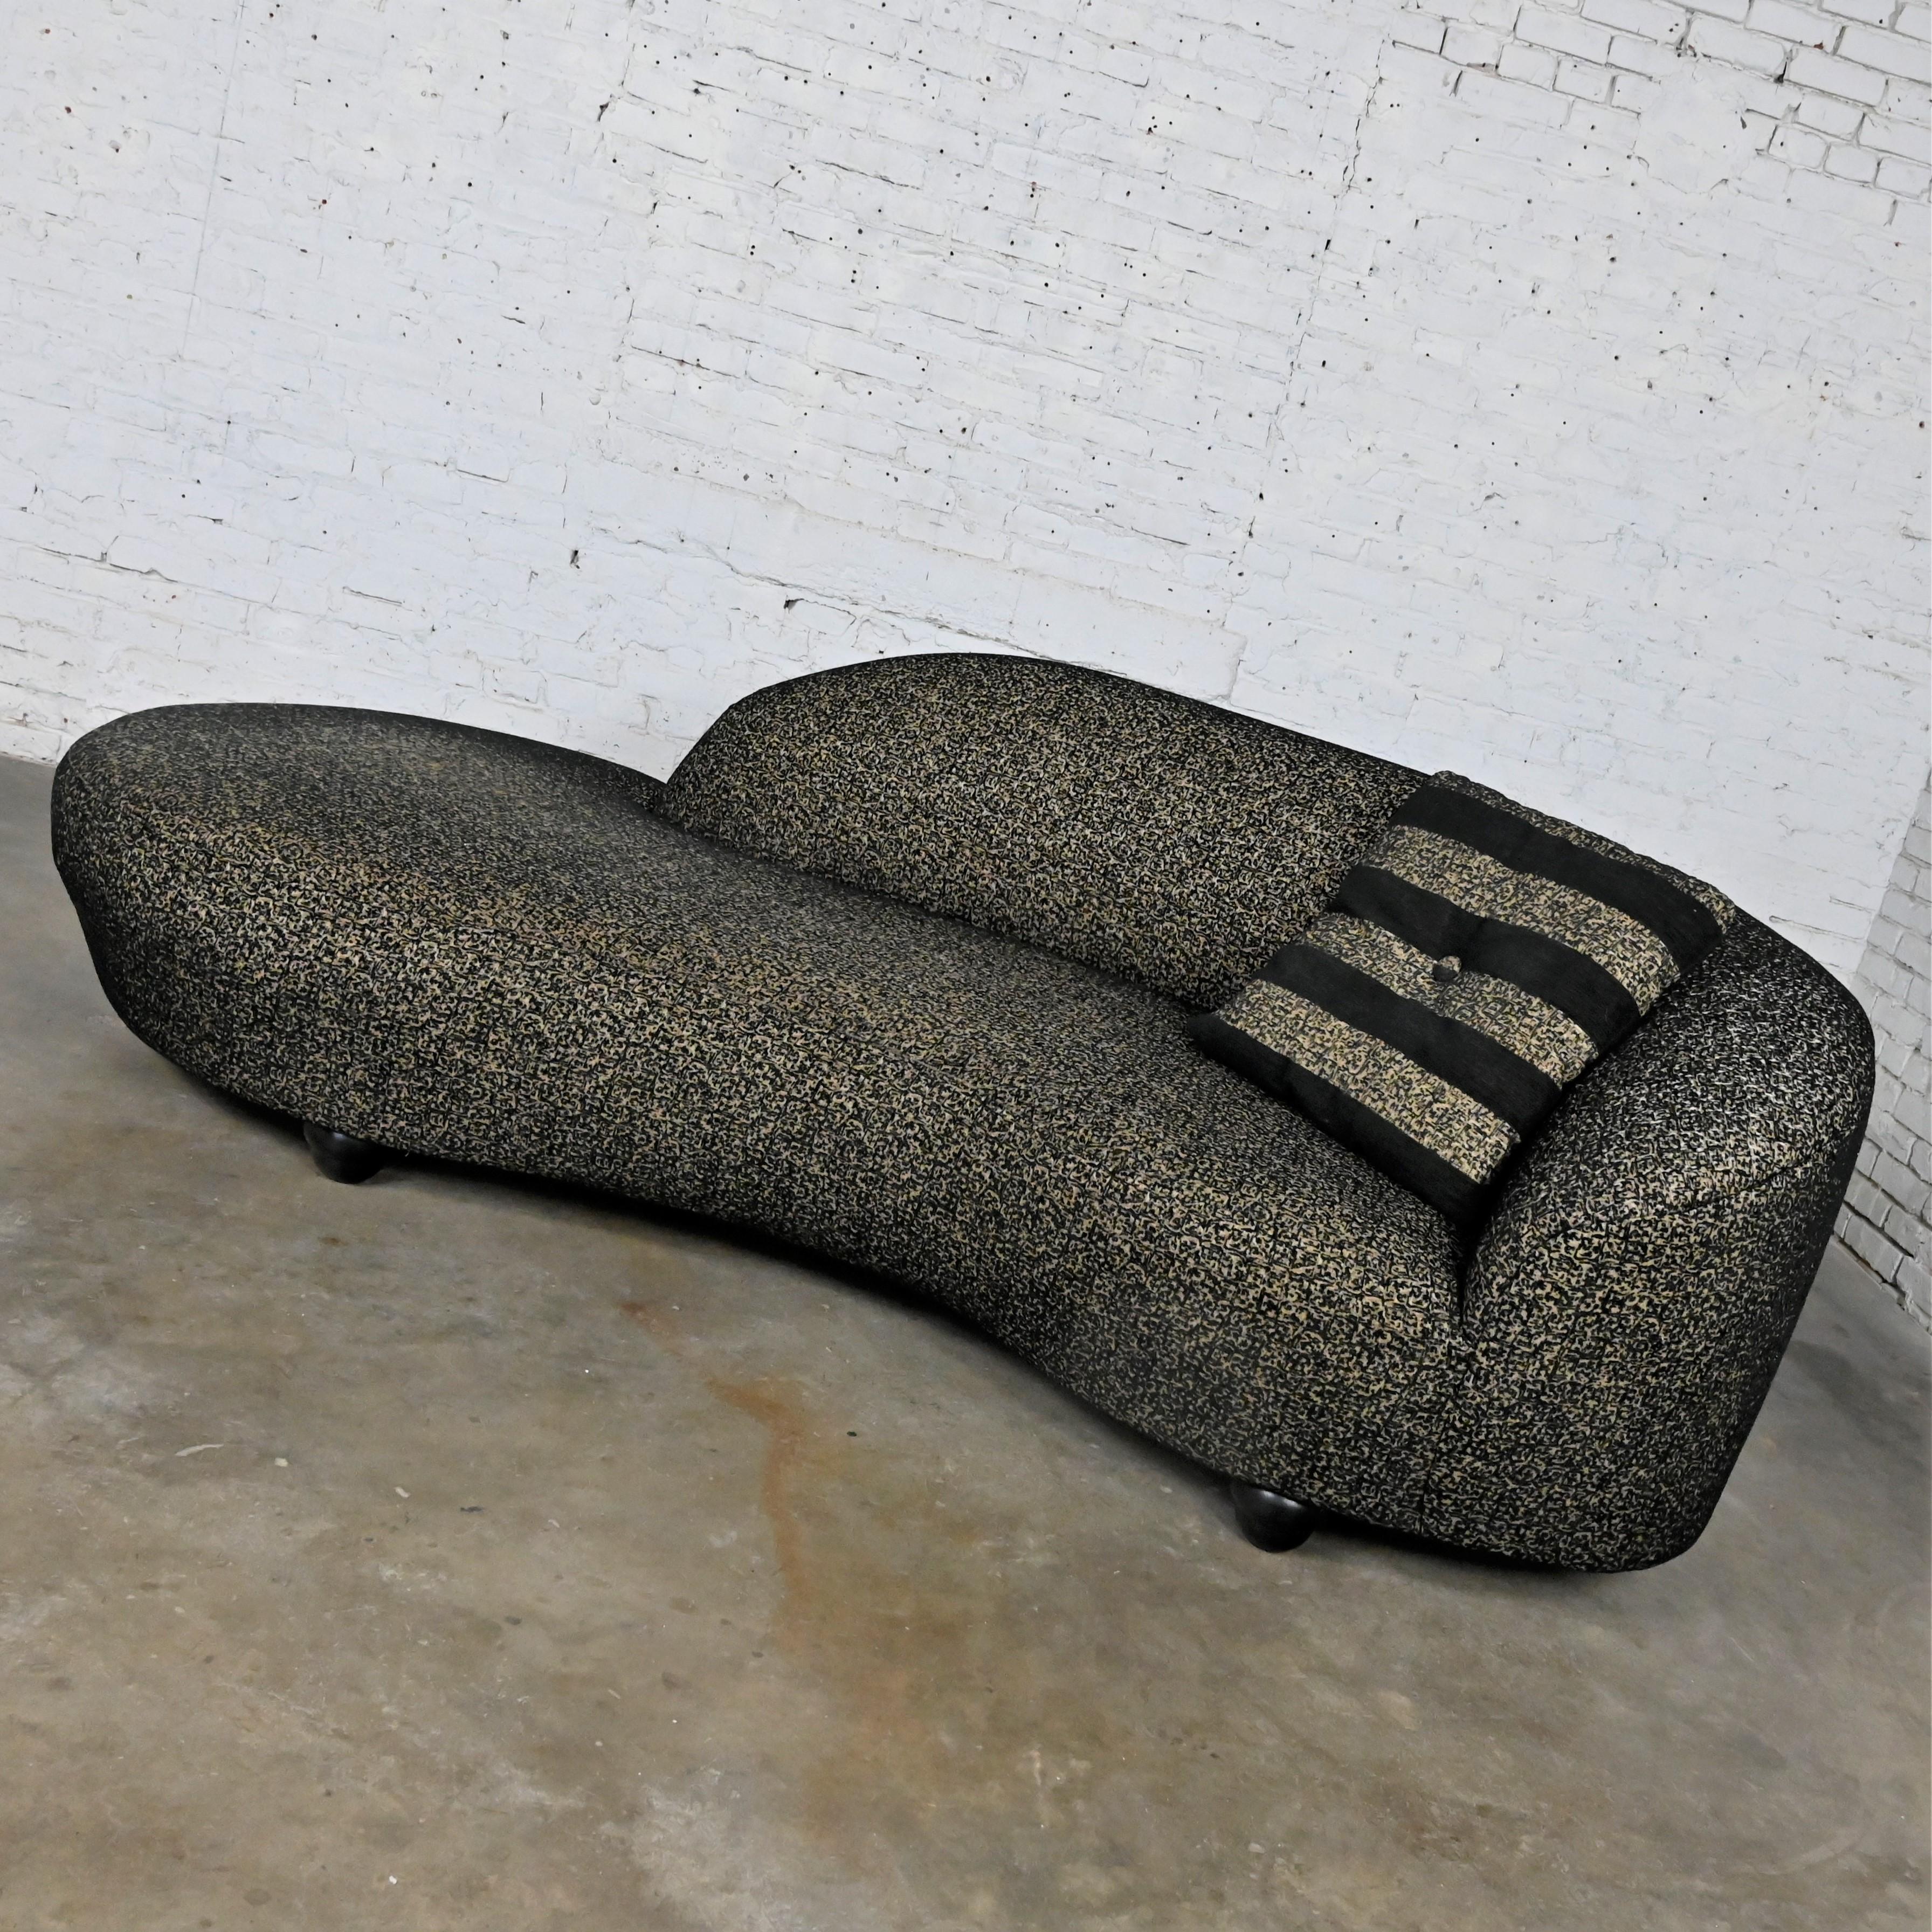 Magnifique chaise ou canapé postmoderne noir et kaki à imprimé animalier, en forme de nuage serpentin ou biomorphe, avec coussin, sur des pieds concentriques et arrondis empilés. Très bon état, tout en gardant à l'esprit qu'il s'agit d'un produit